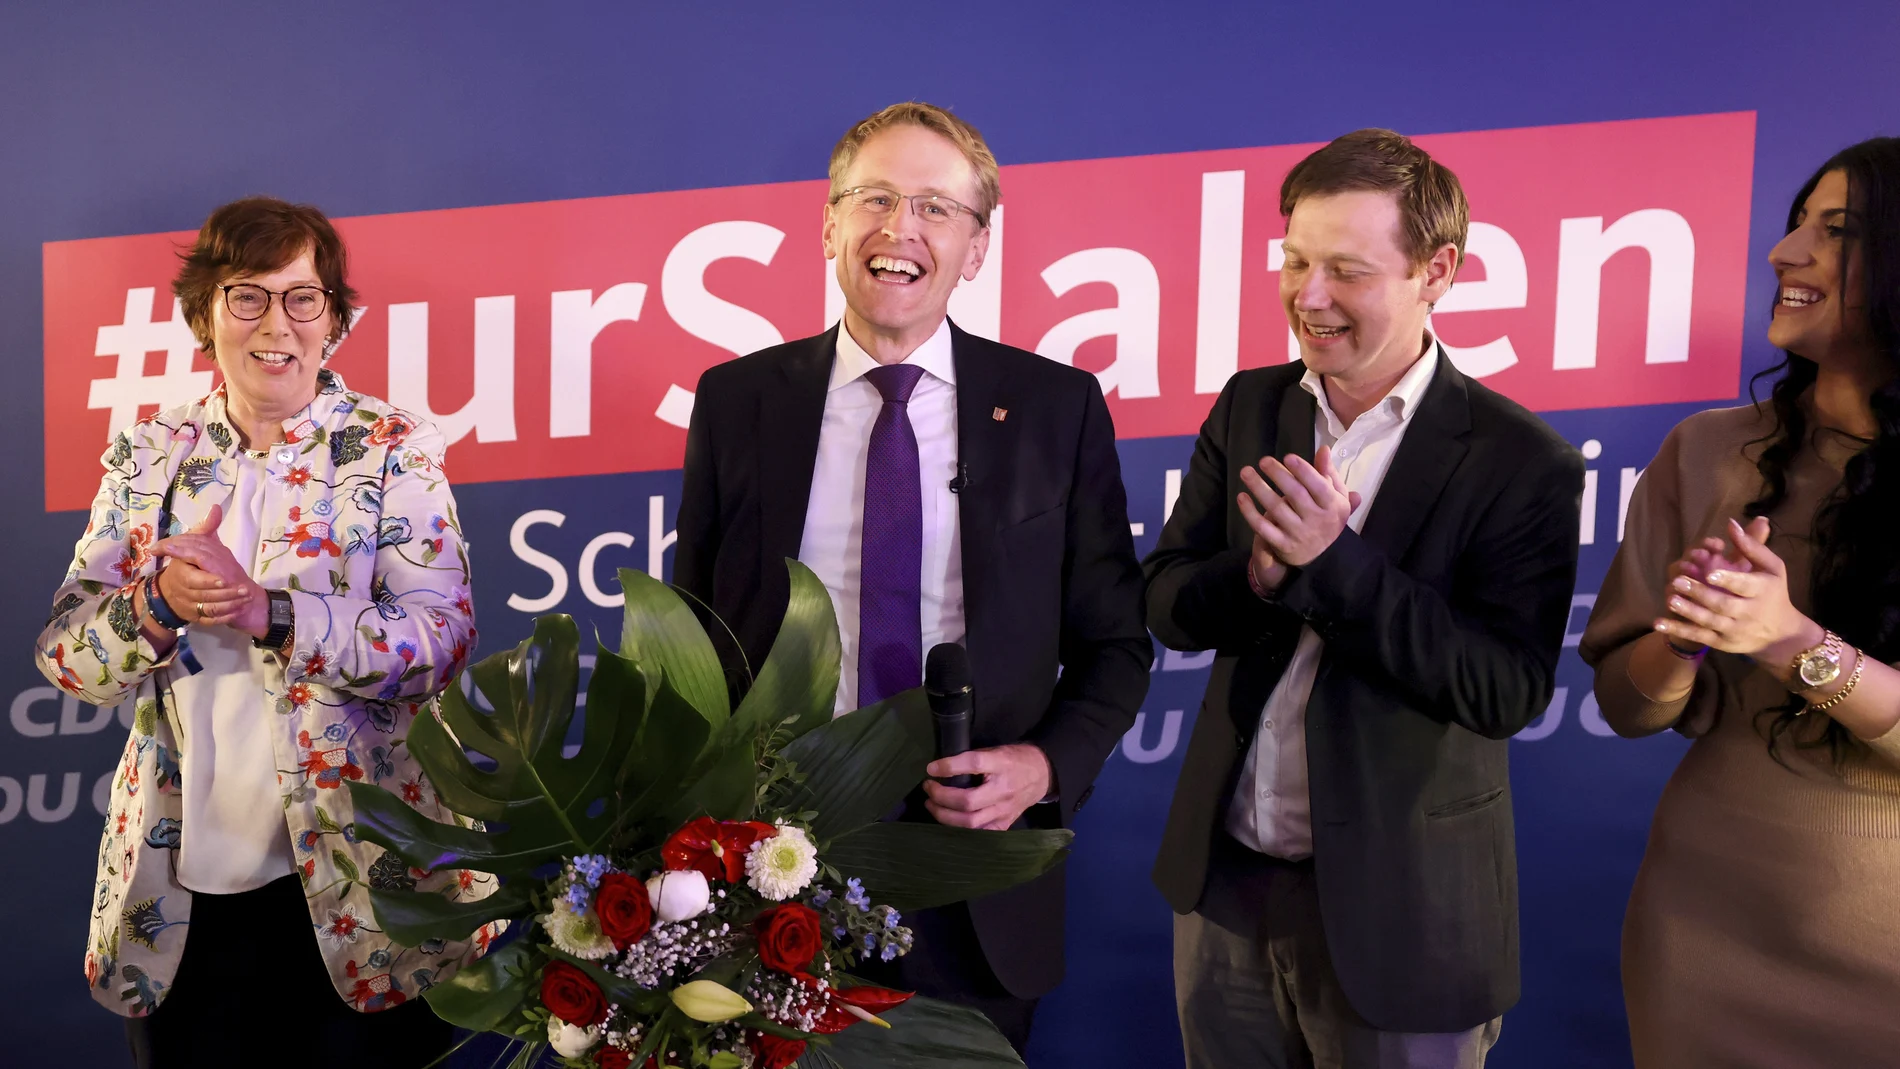 Daniel Günther de la Unión Demócrata Cristiana (CDU) seguirá al frente del gobierno de Schleswig-Holstein al menos una legislatura más